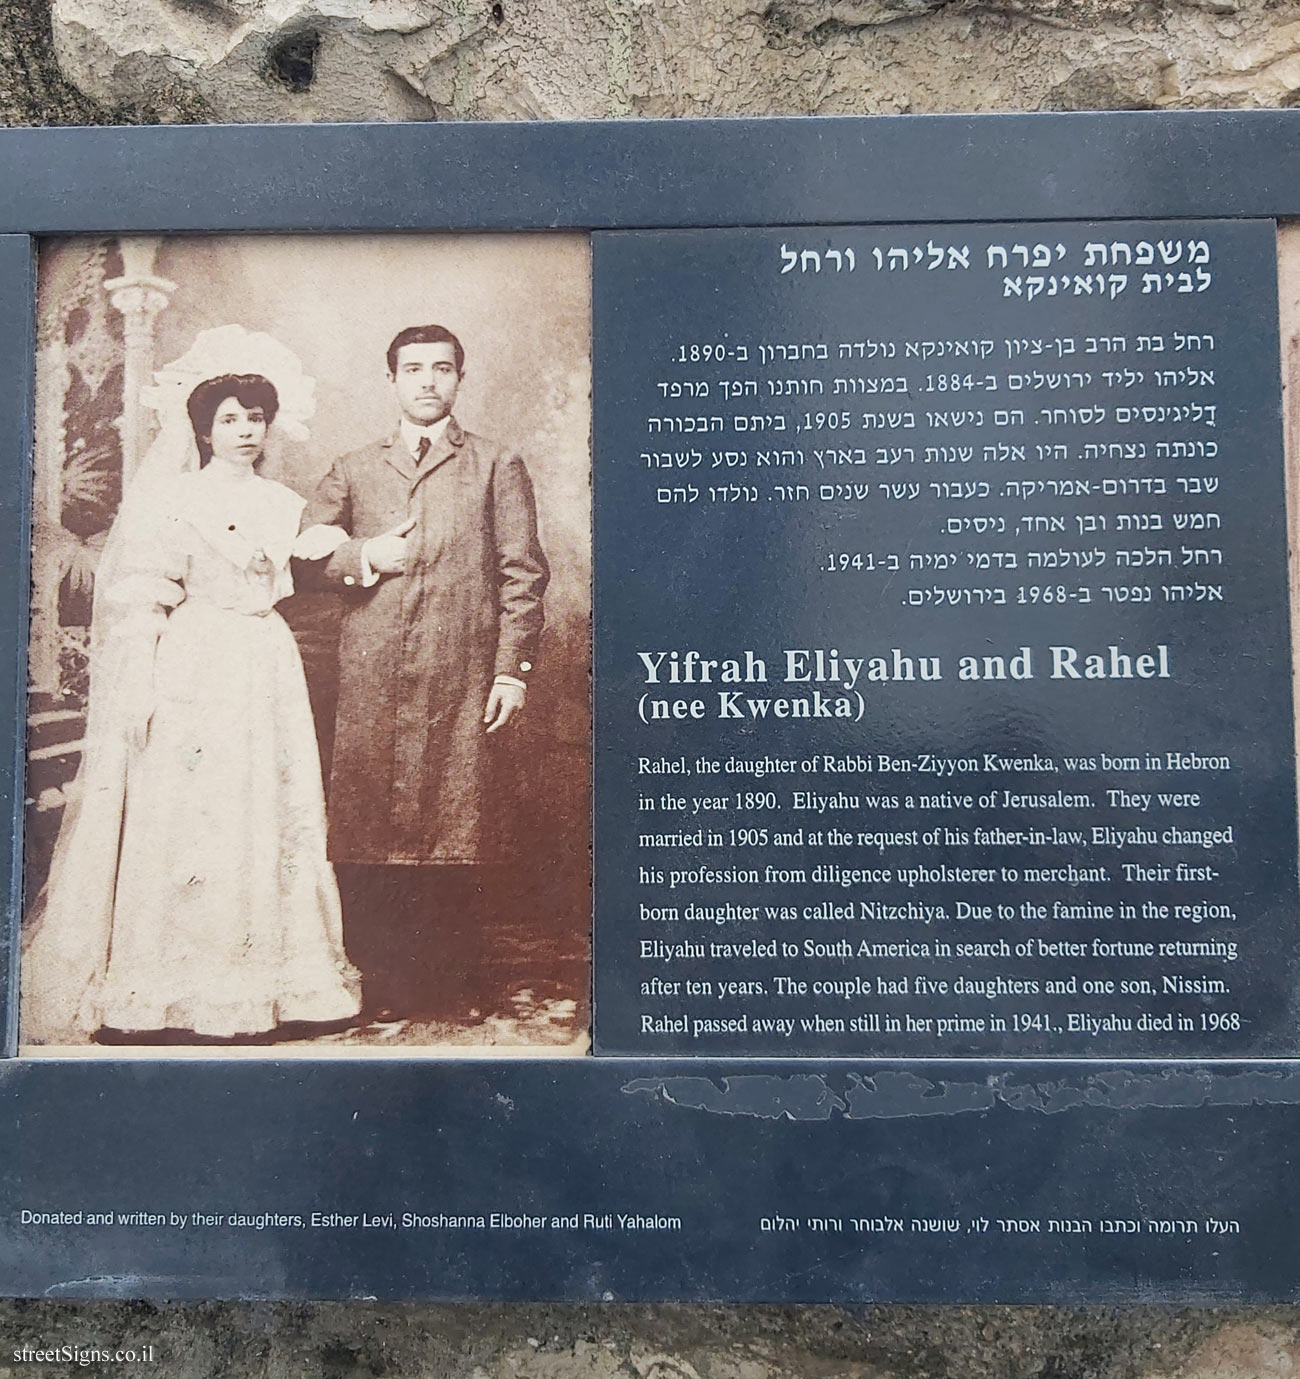 Jerusalem - Photograph in stone - Ohel Moshe - Yifrah Eliyahu and Rahel